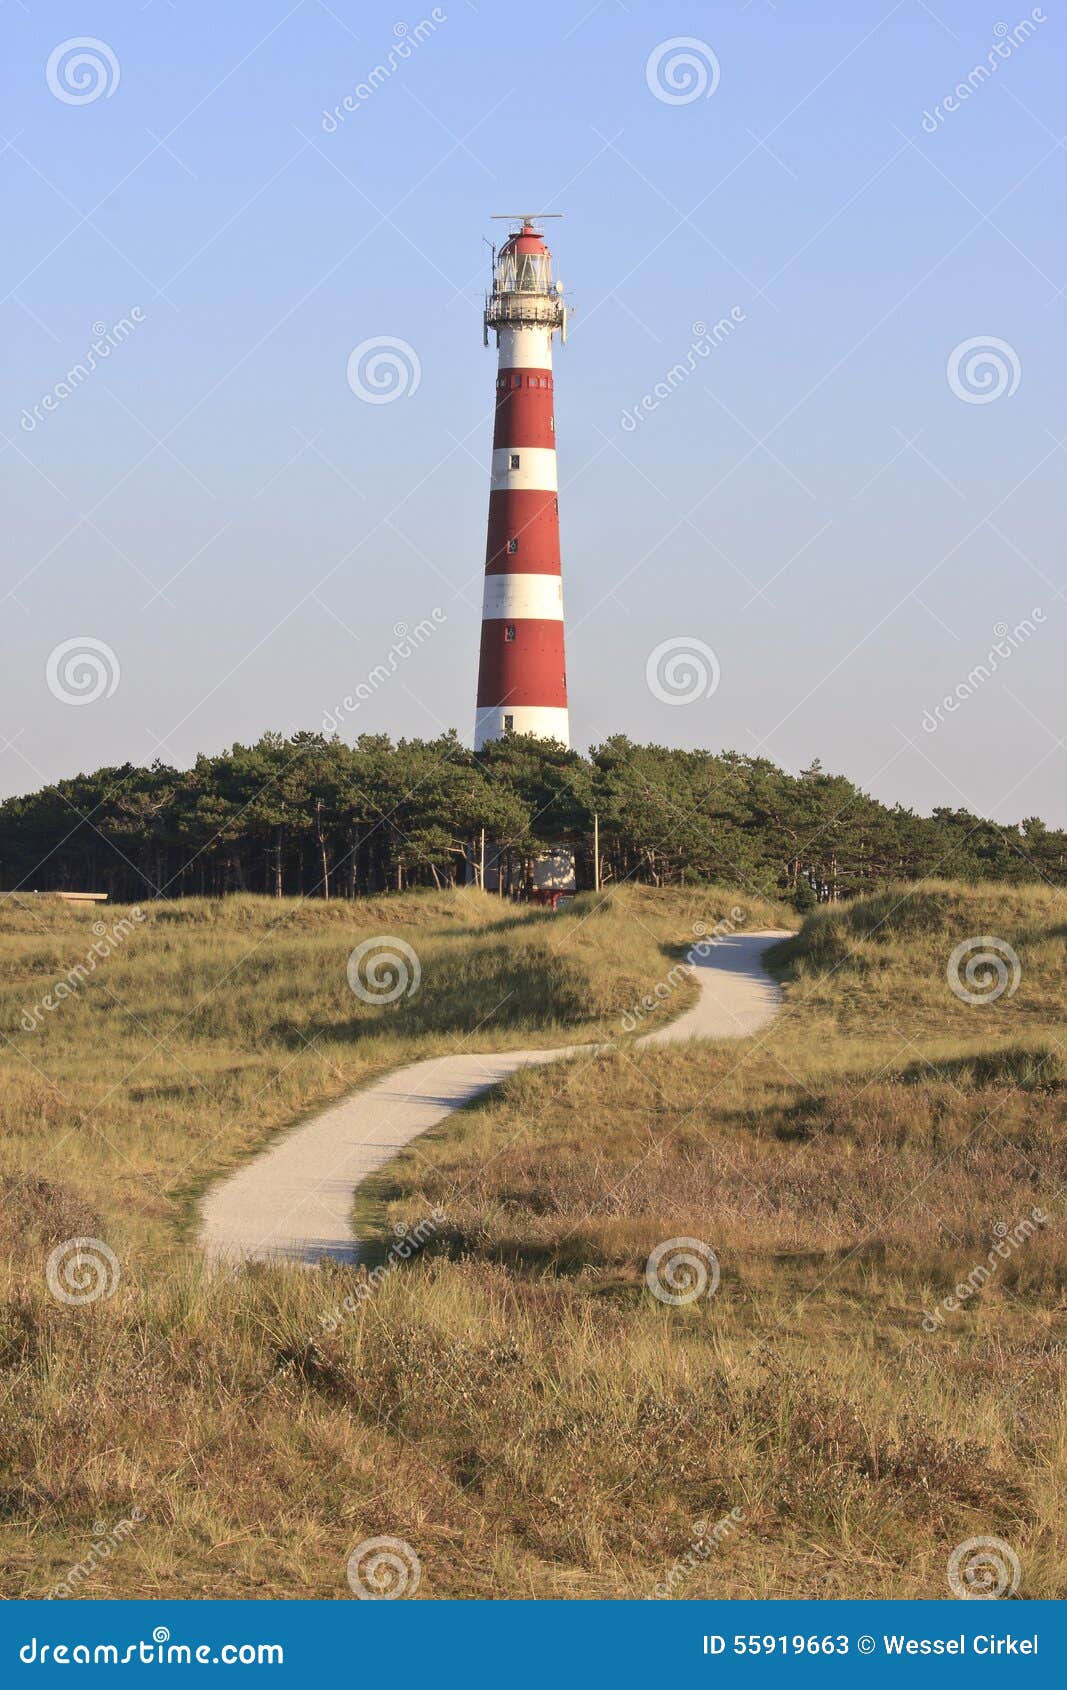 ameland lighthouse bornrif near hollum, holland